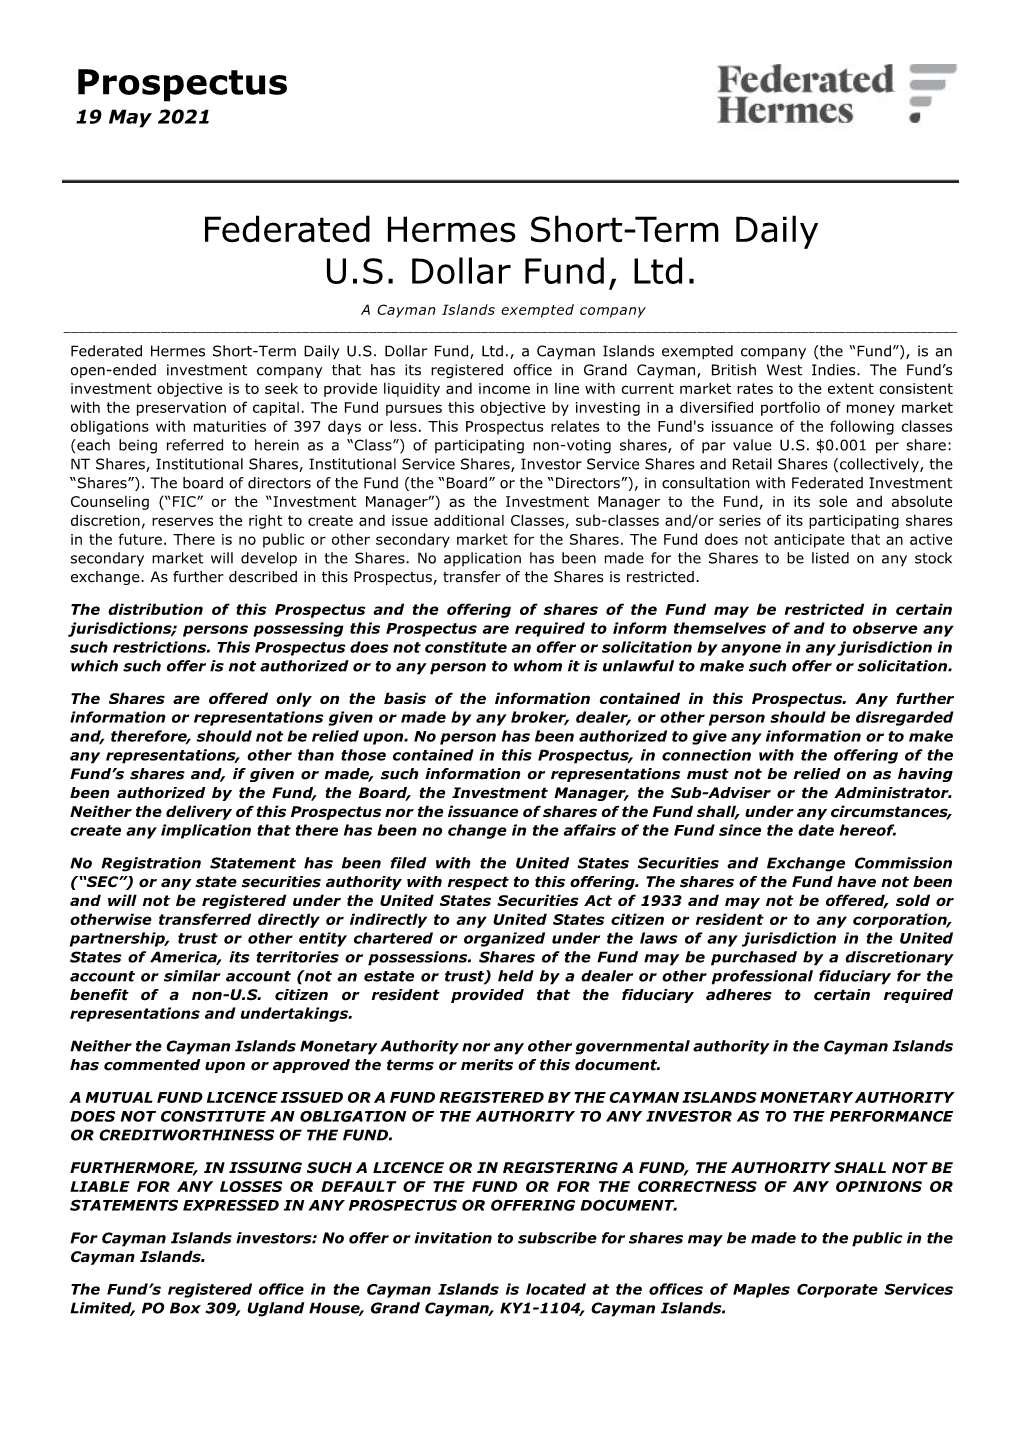 Federated Hermes Short-Term Daily U.S. Dollar Fund, Ltd